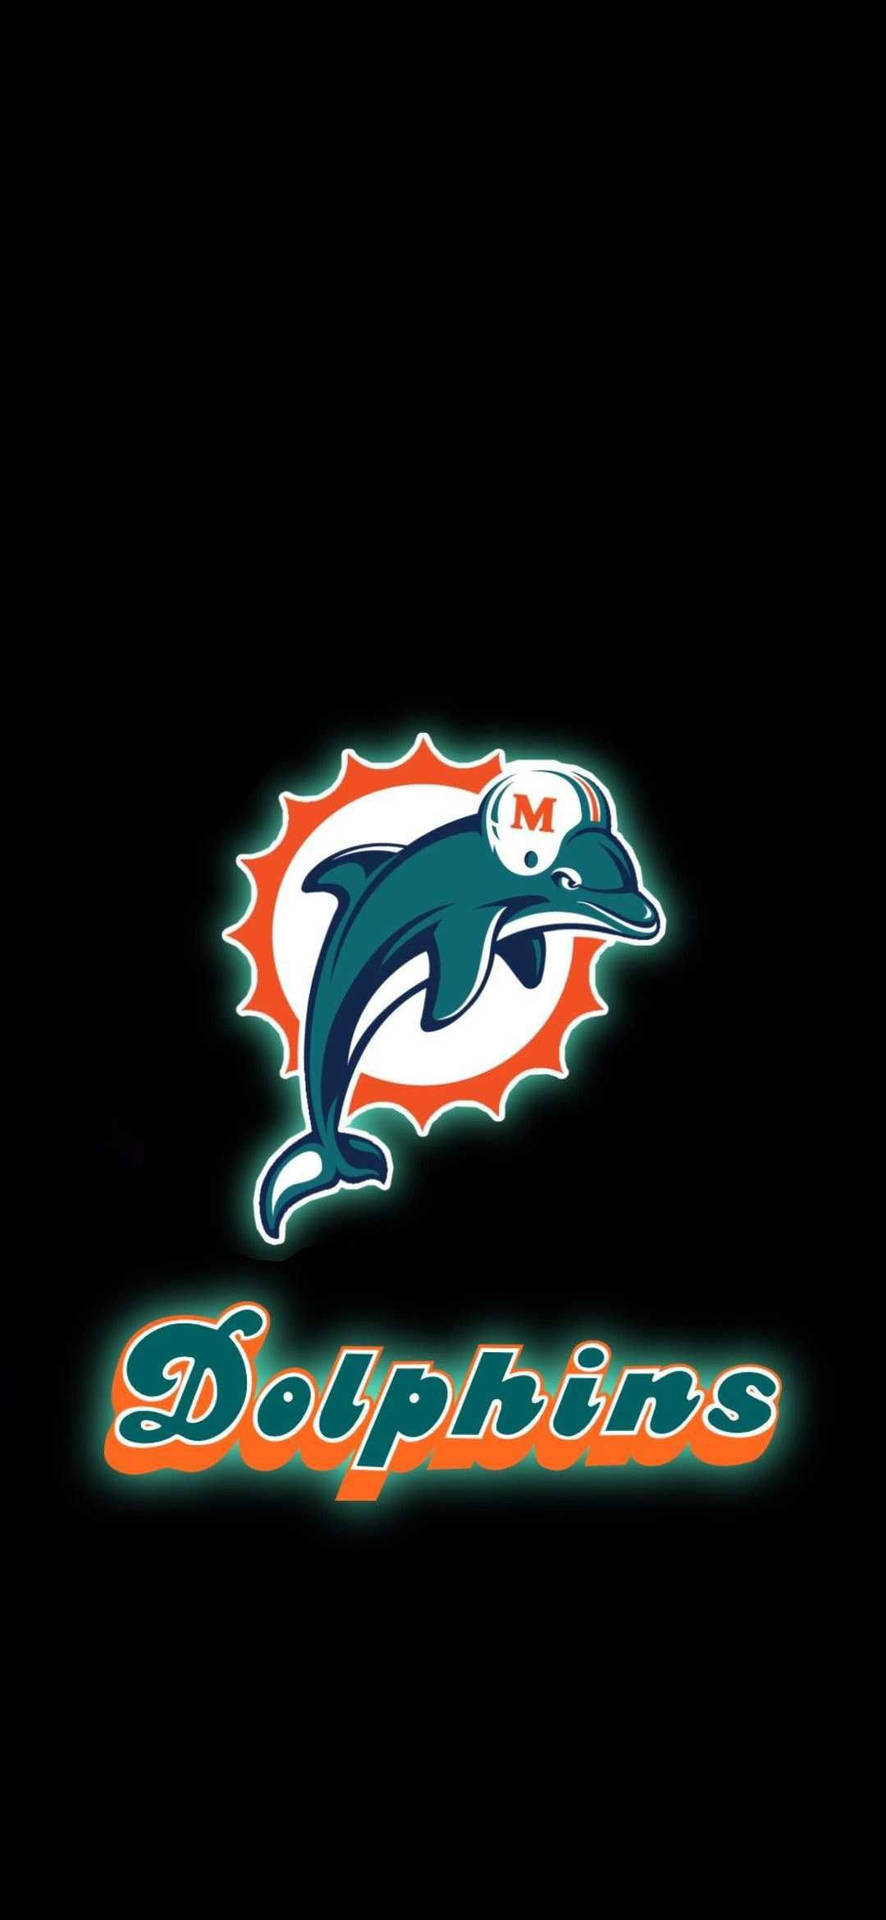 Zeigensie Ihre Begeisterung Für Die Miami Dolphins Und Unterstützen Sie Ihr Team Mit Diesem Miami Dolphins Iphone! Wallpaper